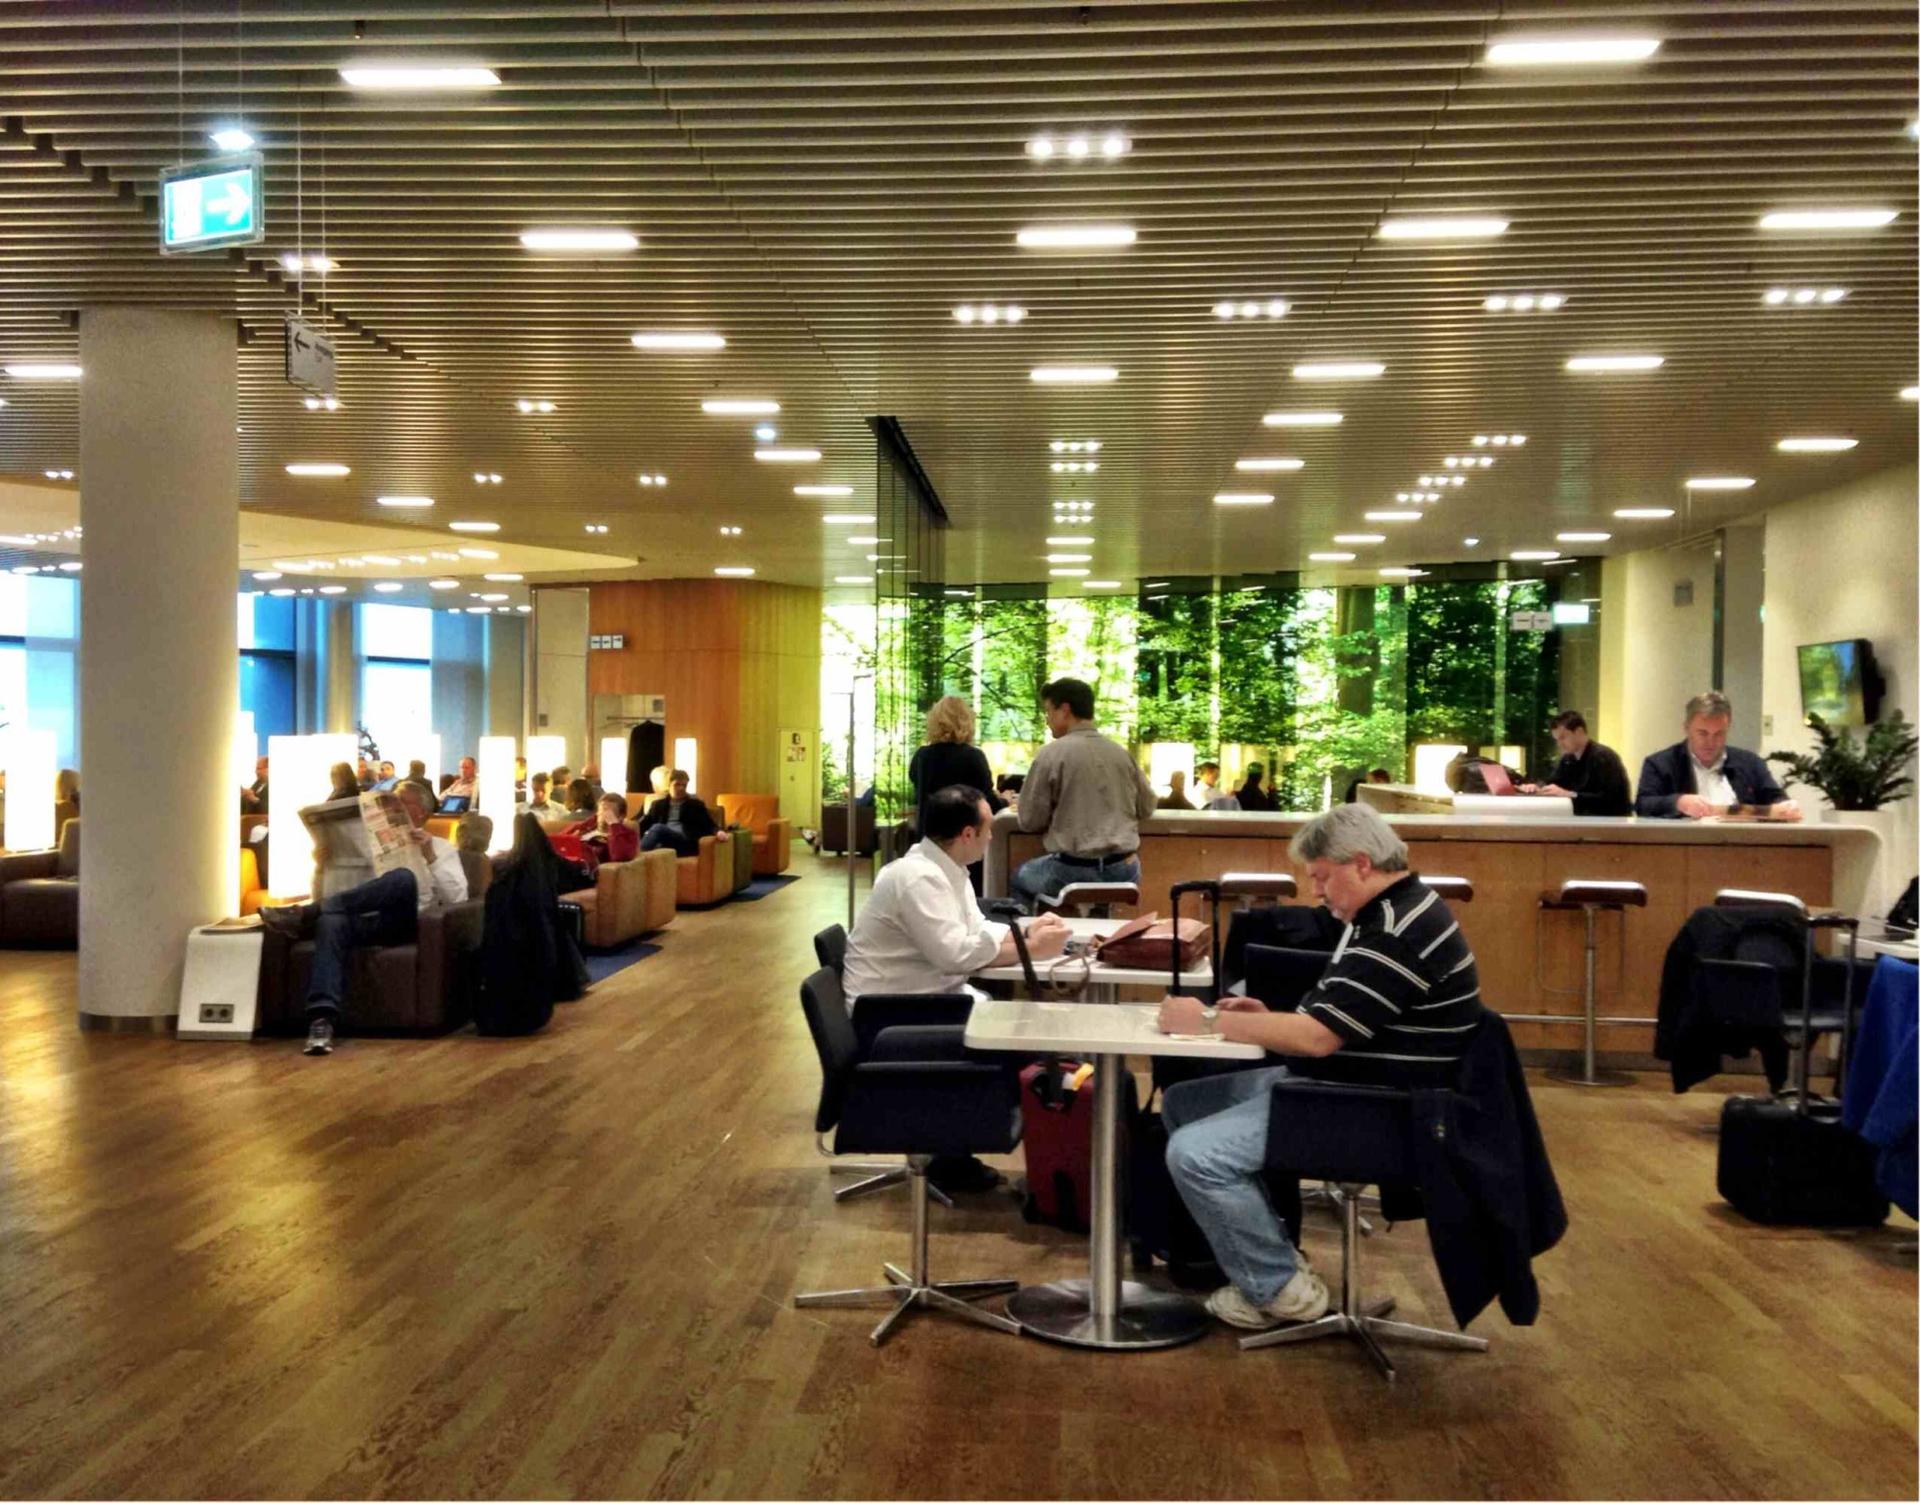 Lufthansa Senator Lounge (Schengen) image 1 of 6